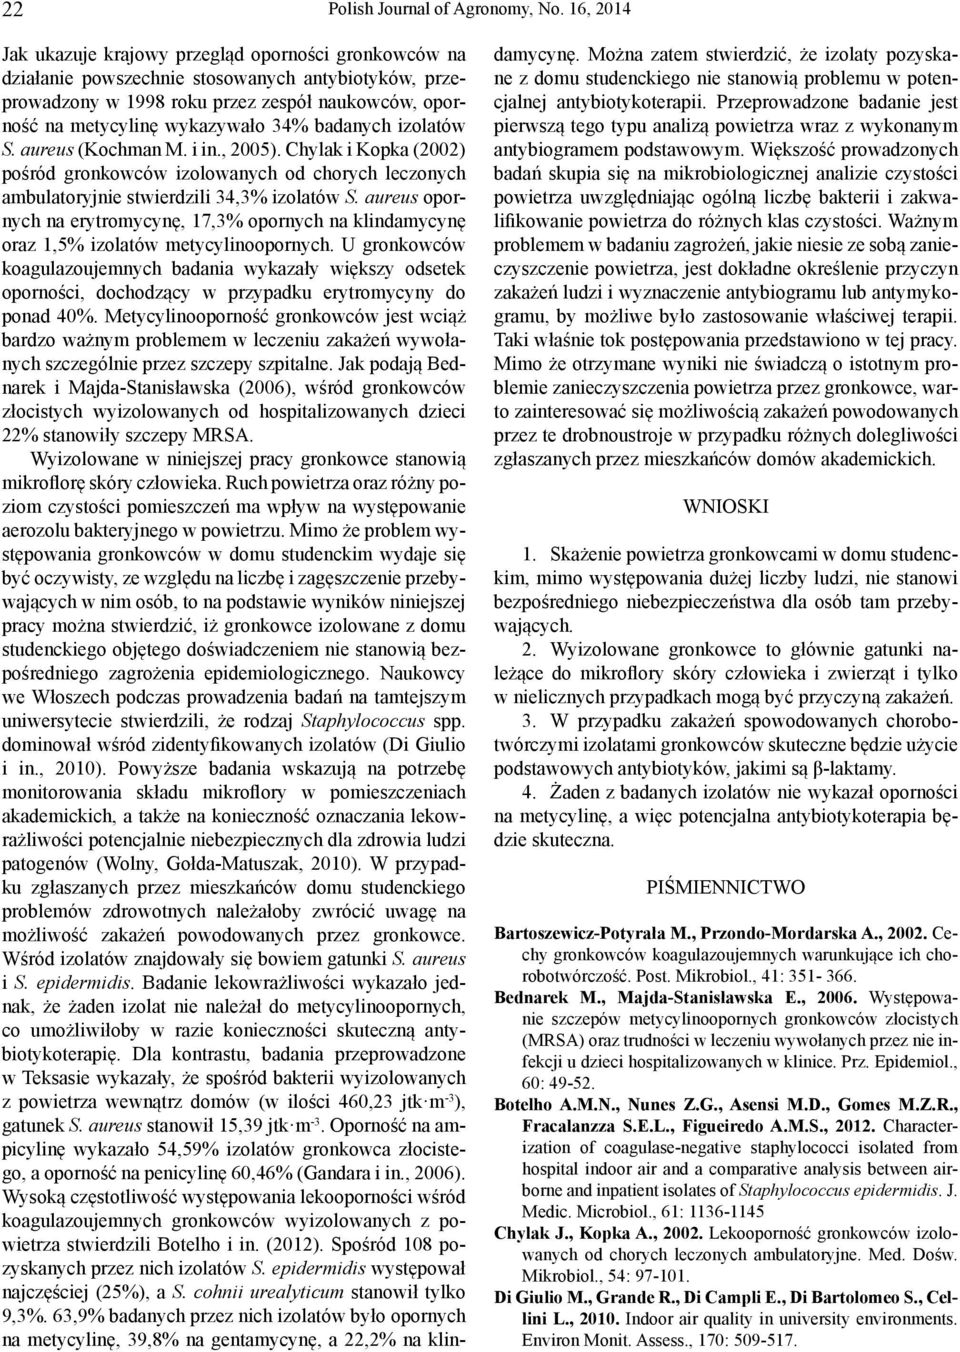 badanych izolatów S. aureus (Kochman M. i in., 2005). Chylak i Kopka (2002) pośród gronkowców izolowanych od chorych leczonych ambulatoryjnie stwierdzili 34,3% izolatów S.